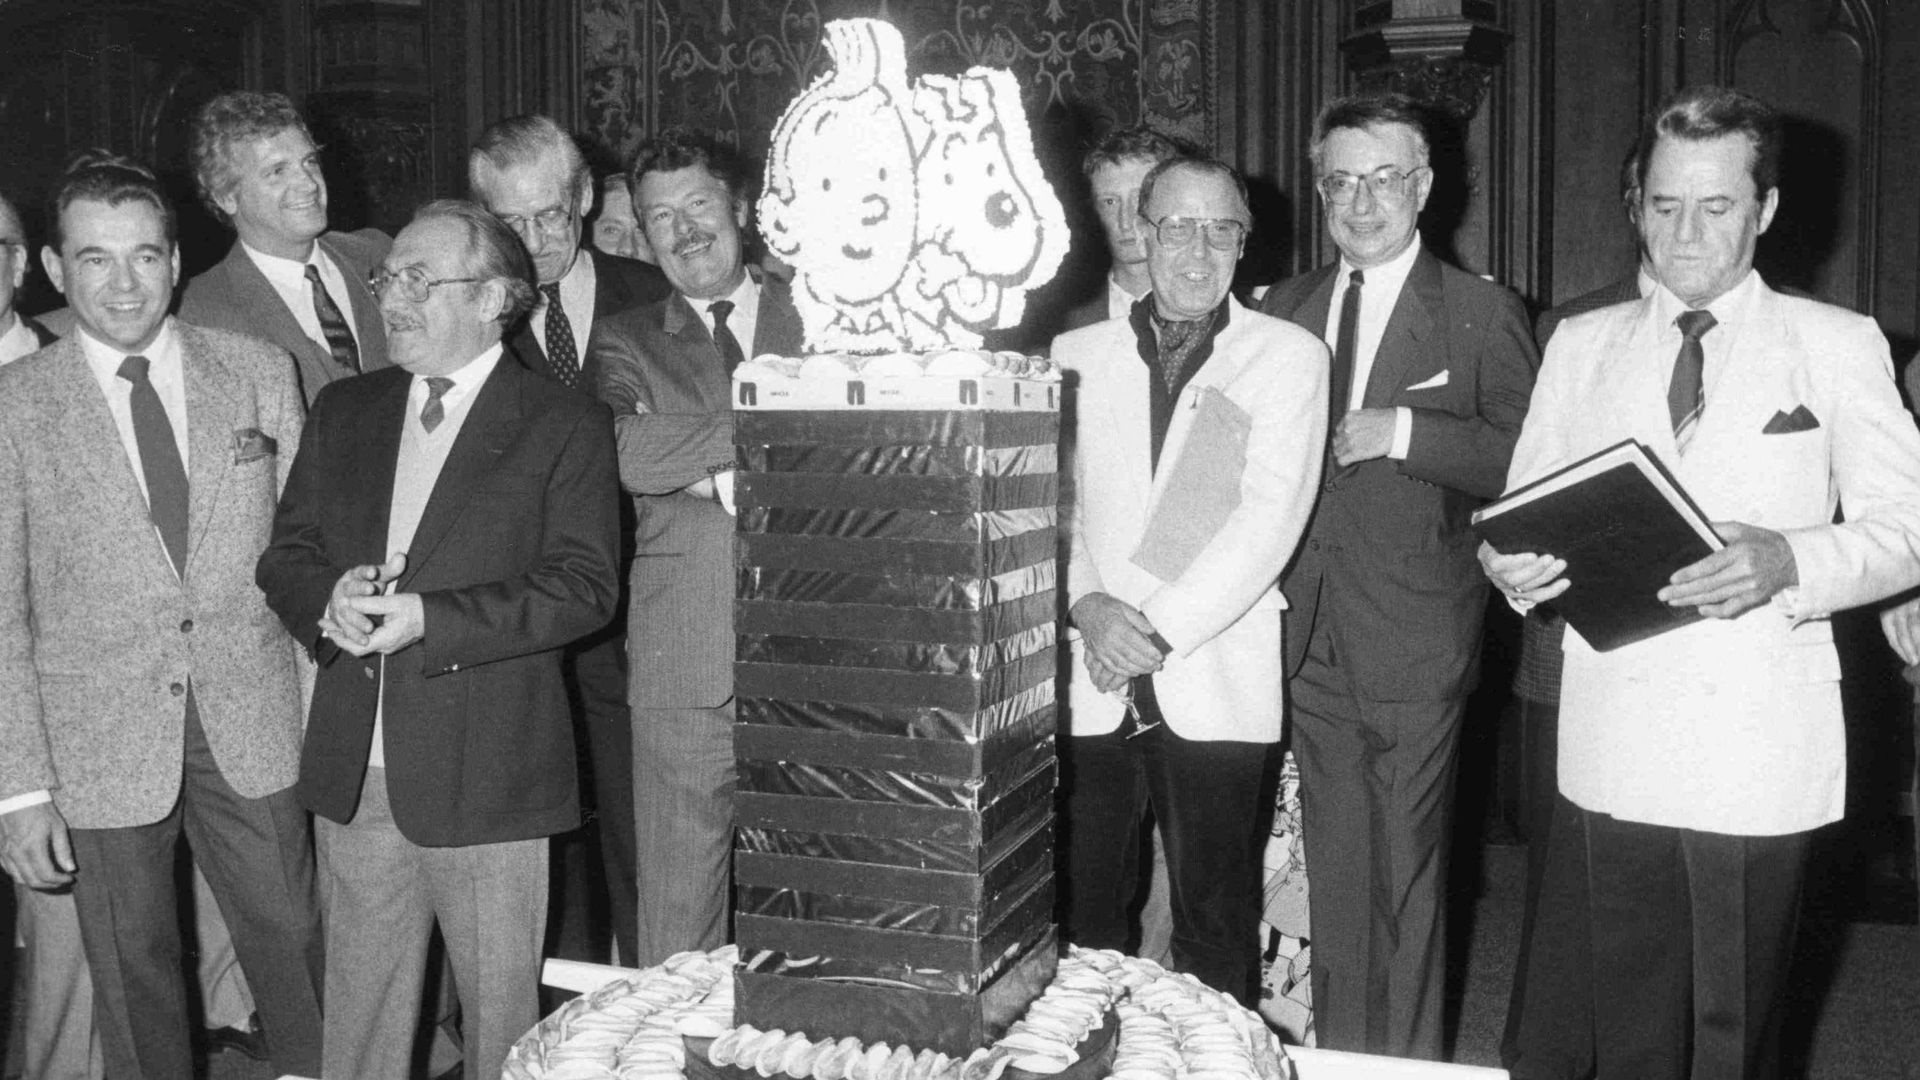 Bob de Groot, Dany, Eddy Paape, Bob de Moor, Duchateau, Tibet, Greg et Raymond Leblanc lors de la célébration du 40e anniversaire du magazine Tintin.